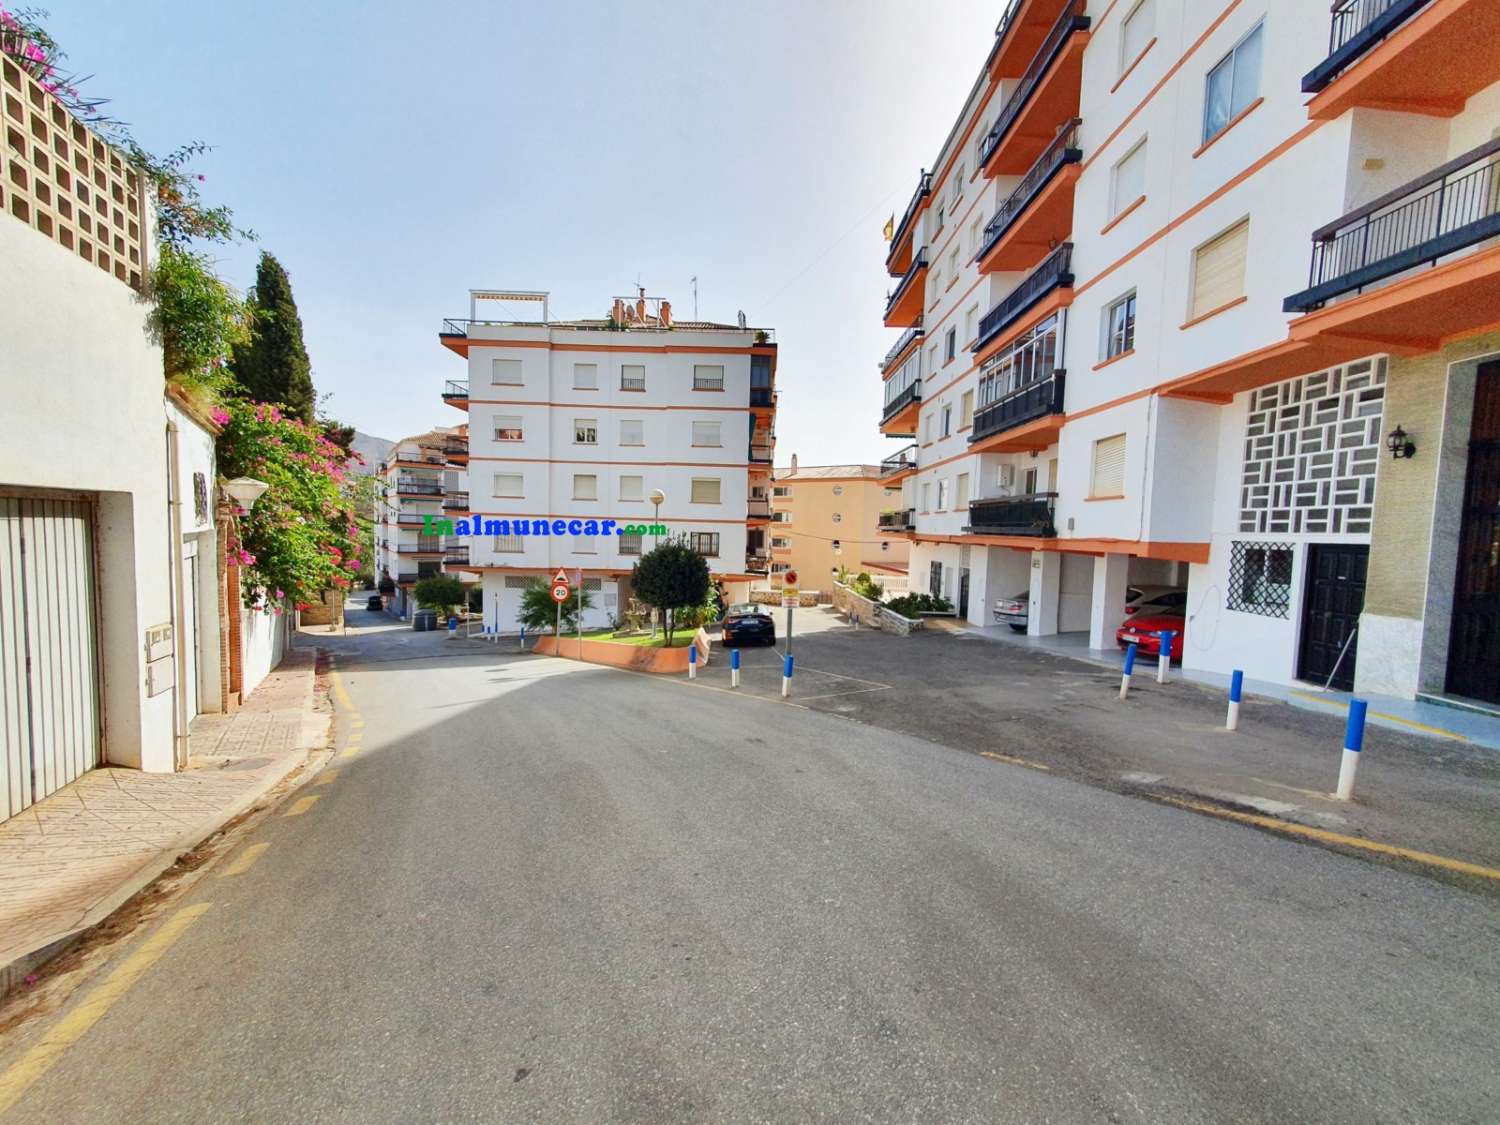 Renovierte Wohnung zum Verkauf in Almuñecar in der 2. Strandlinie mit Gemeinschaftsparkplatz.